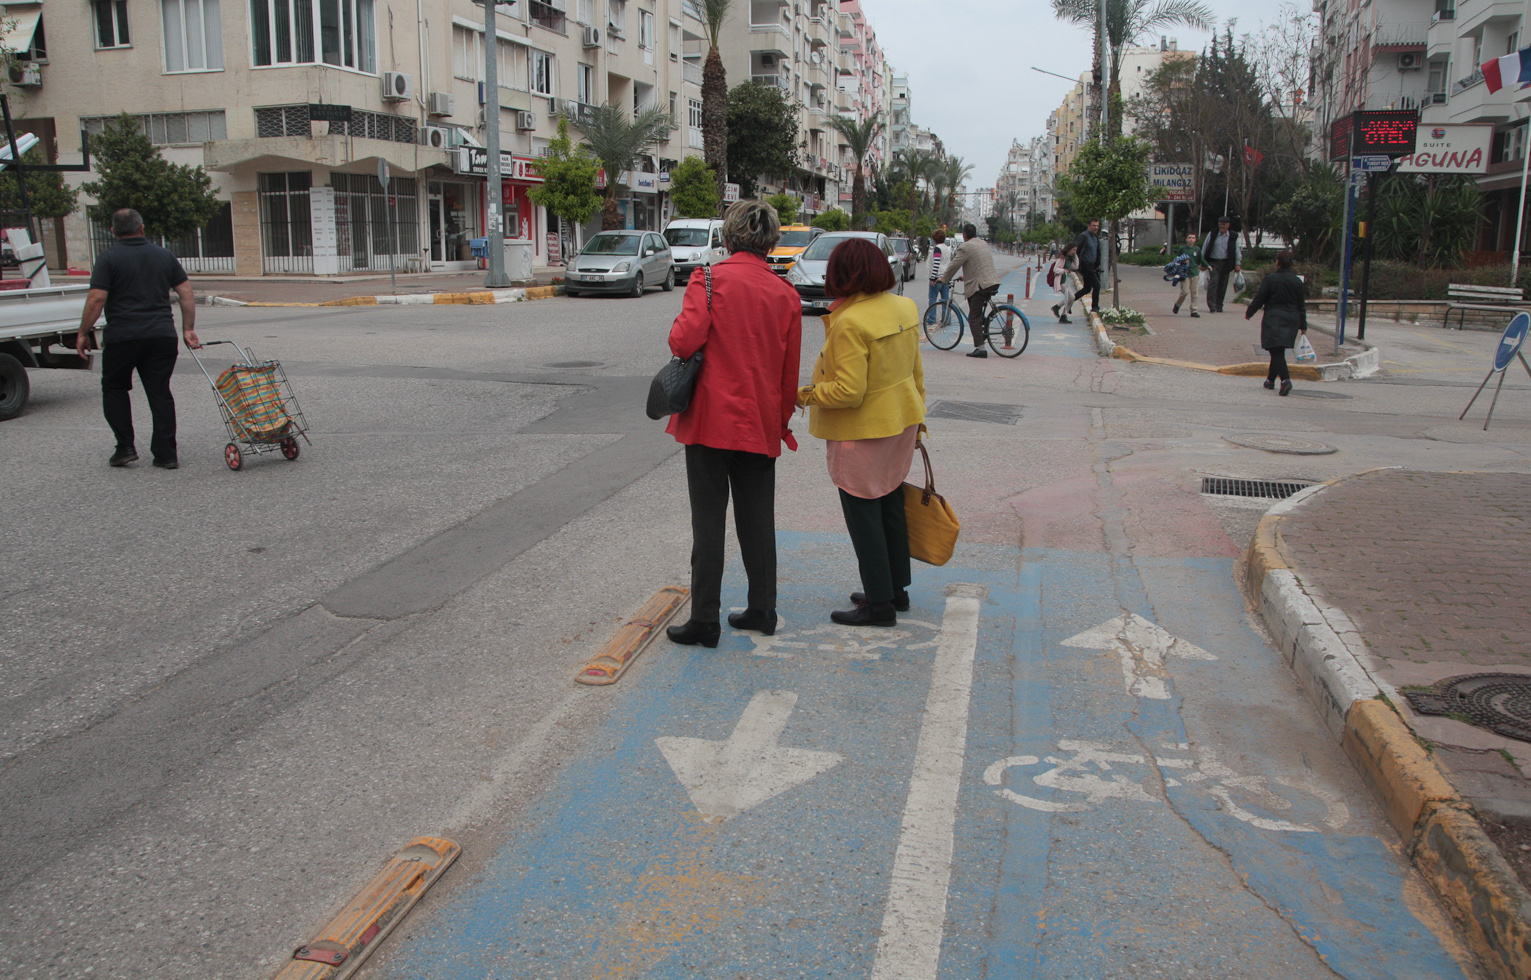 Велодорожки -- безопасные, пока не доедешь до перекрестка -- турецкие водители не особо аккуратны